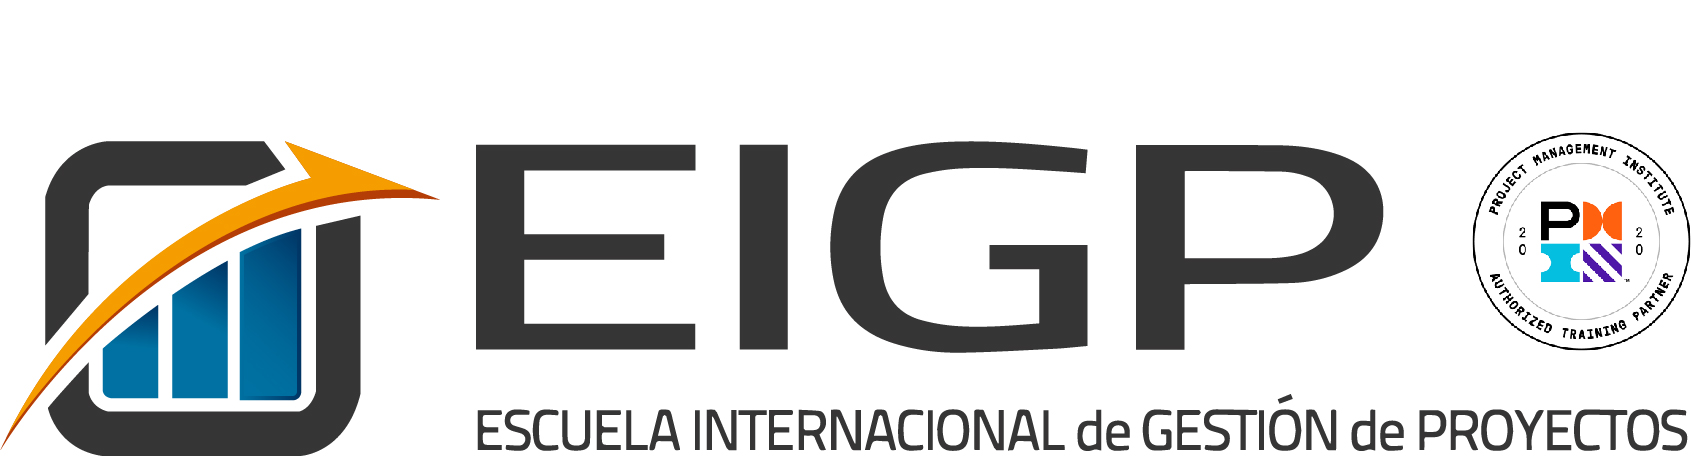 logotipo EIGPselloATP PMI